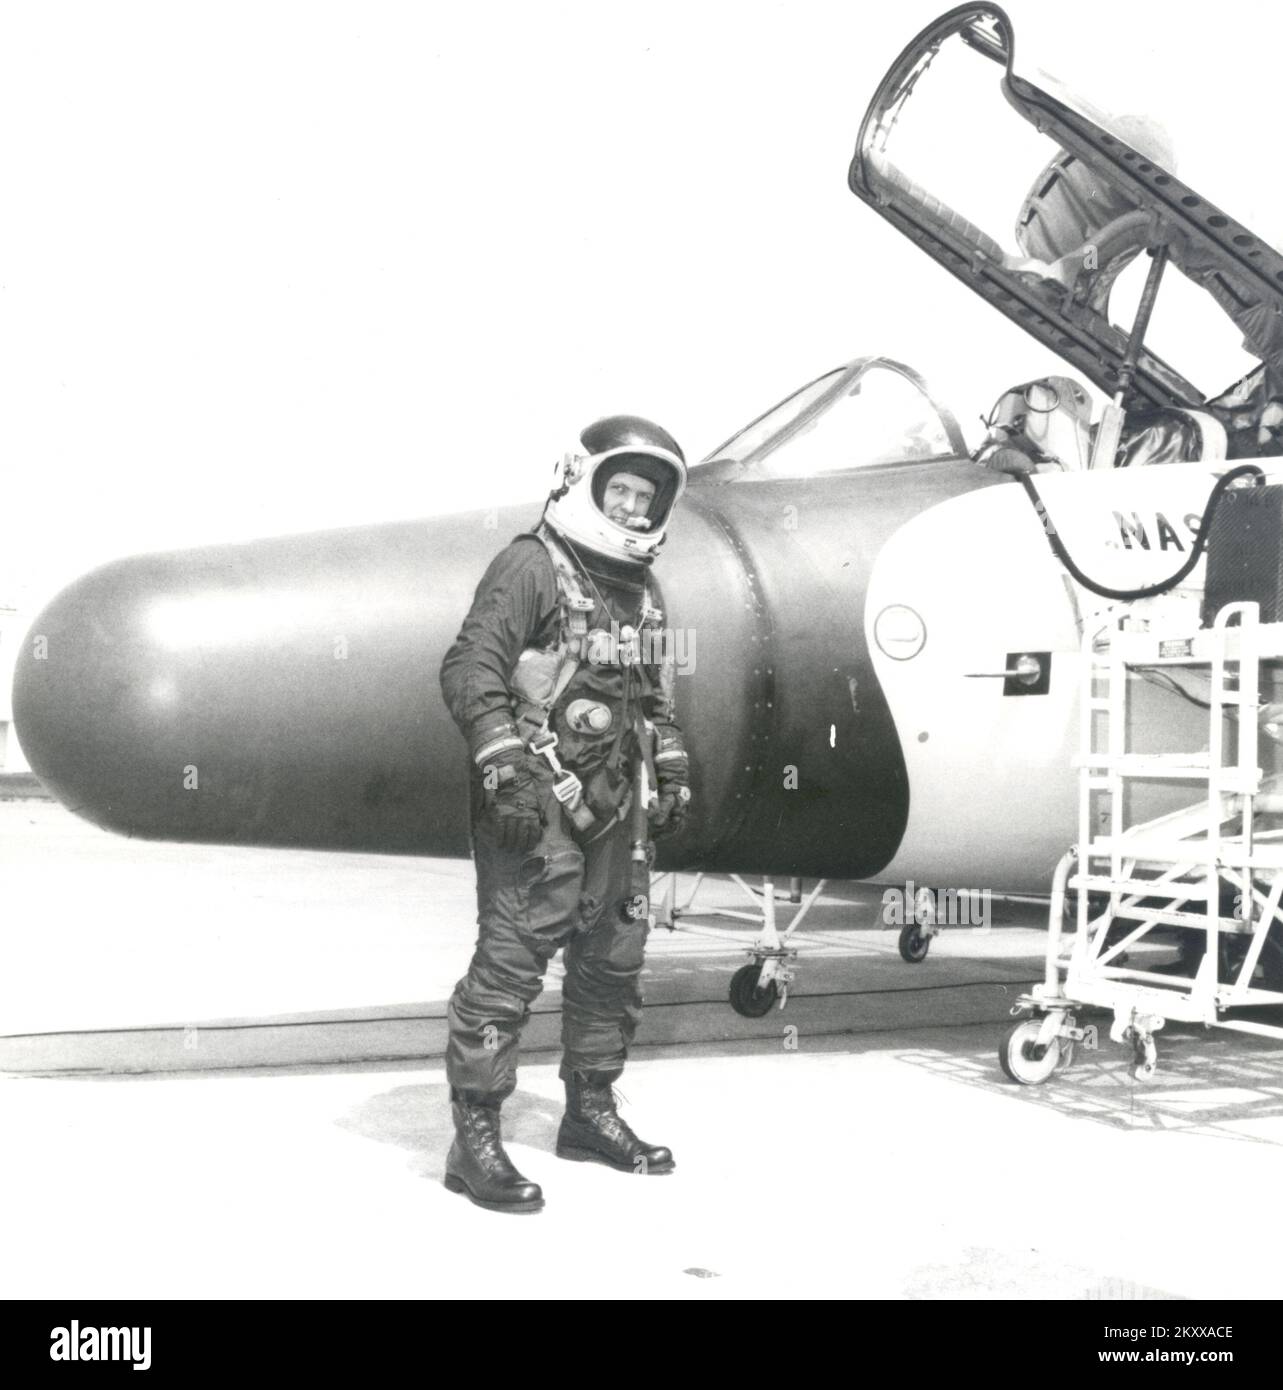 Un record non officiel d'altitude aérienne américaine soutenue pour les femmes a été établi le 1er juillet 1979 par la candidate à l'astronaute Kathryn D. Sullivan dans un avion de reconnaissance WB-57F de la NASA. L'altitude record de 63,300 pieds a été atteinte au cours d'un vol de quatre heures. Sullivan, dans une combinaison de pression à haute altitude, a exploité des caméras infrarouges couleur et des équipements de balayage multispectral, tandis que le WB-57F a passé une heure et demie dans la région de Big Bend dans l'ouest du Texas. Jim Korkowski, l'un des pilotes du programme de recherche en instrumentation aéroportée de la NASA, a été le pilote de l'avion. Le vol était en dehors de la base aérienne d'Ellington, près de Houston. S Banque D'Images